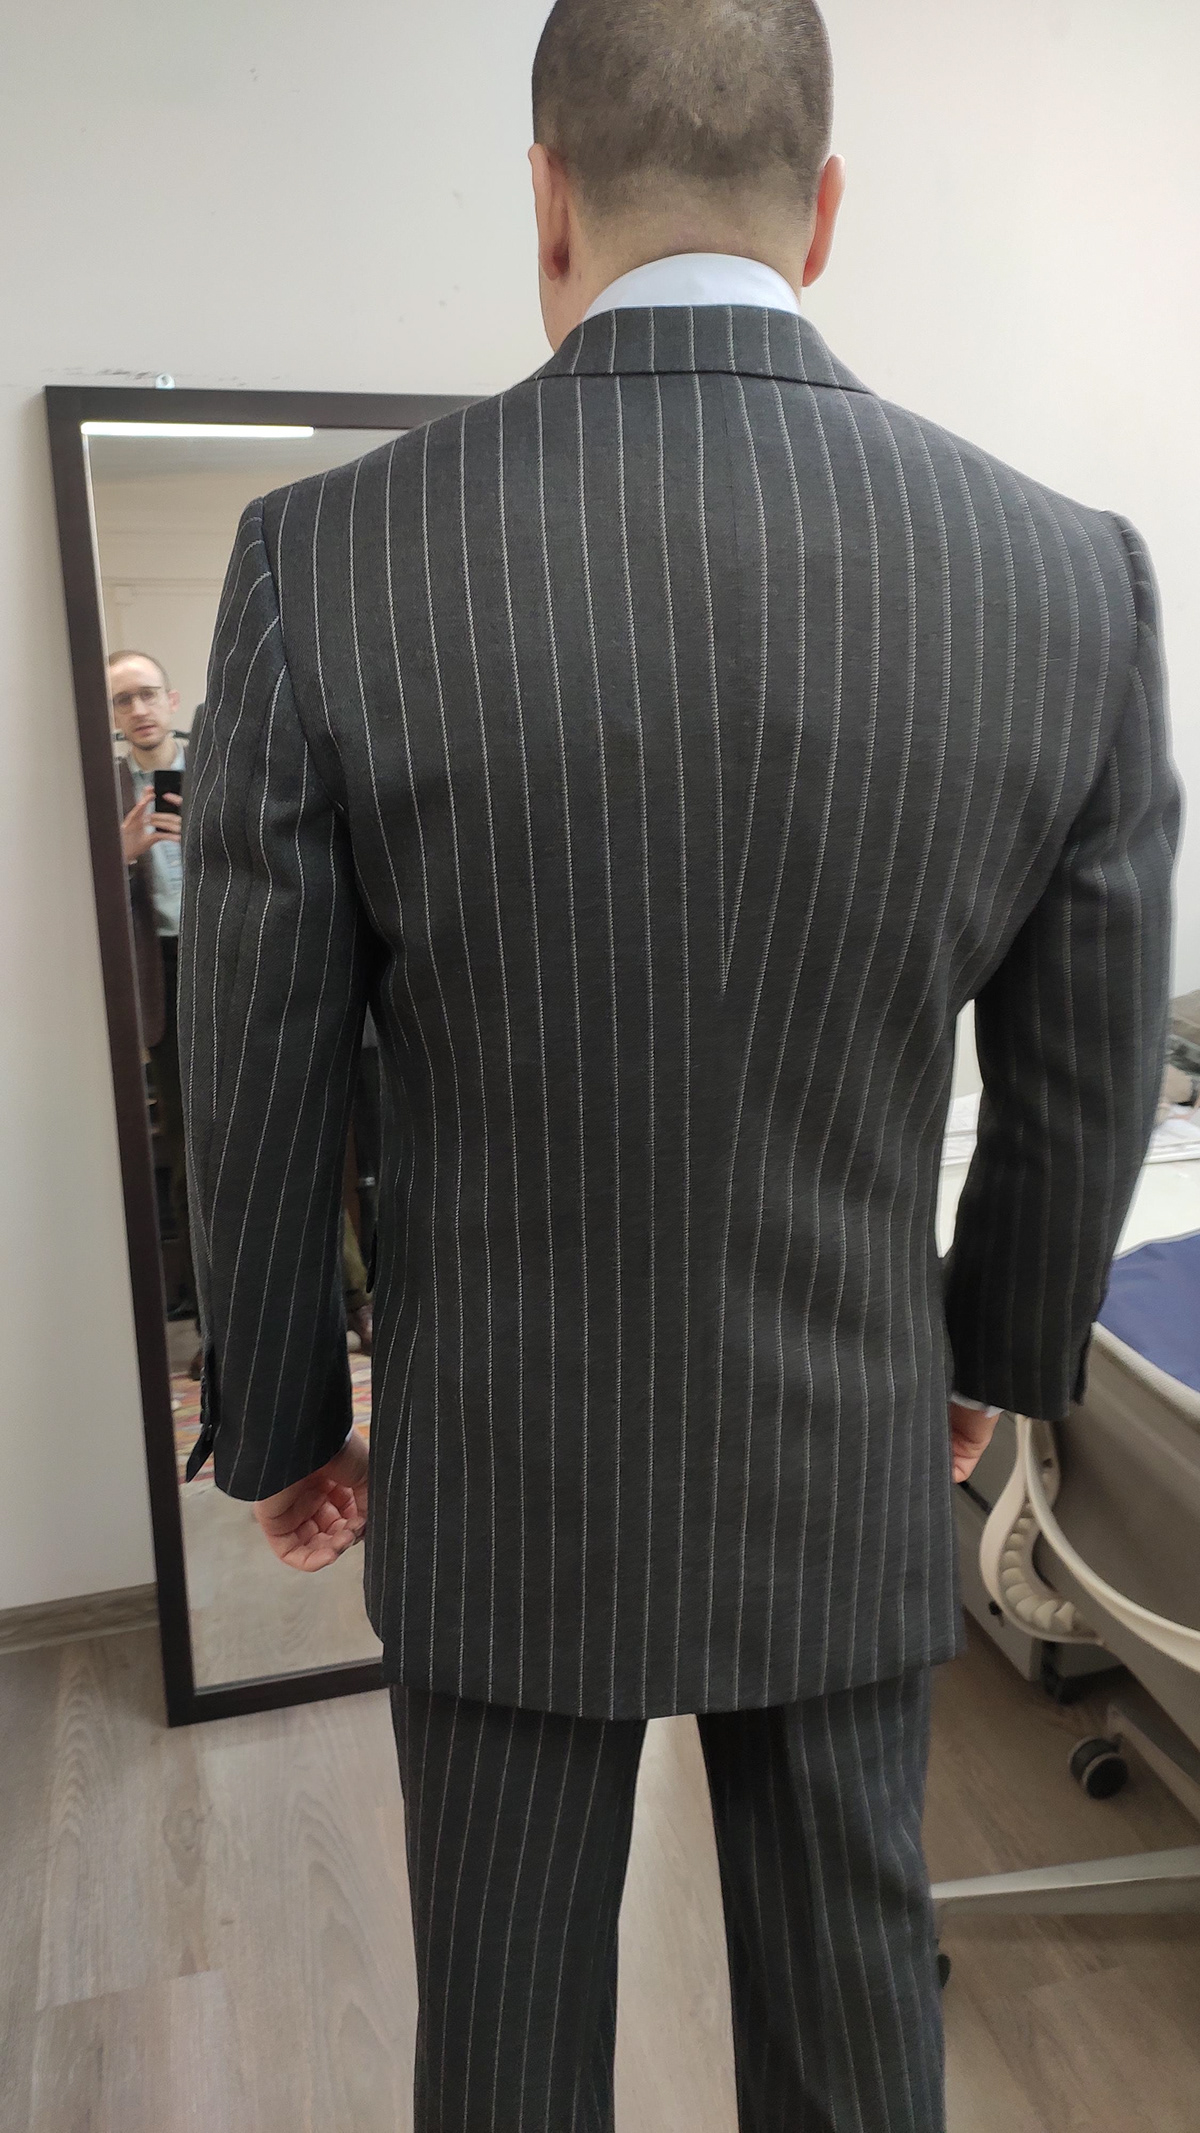 bespoke bespoke tailoring men's fashion Menswear Pattern cutting savile row suit tailoring